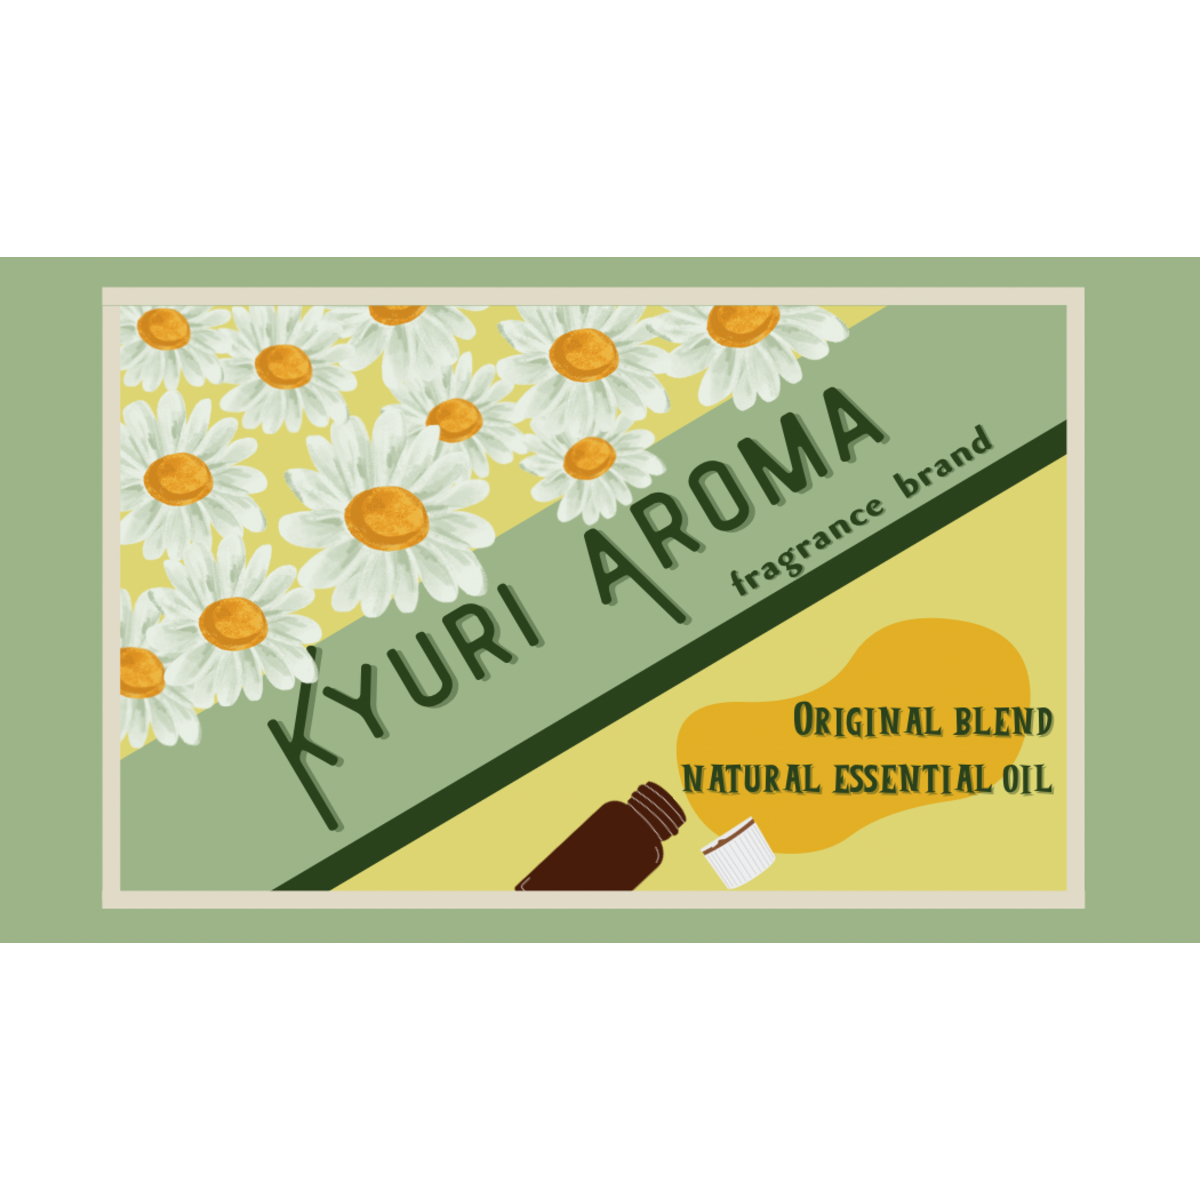 KYURI AROMAのアロマオイルで豊かな暮らしを / お試しミニセットをレビュー